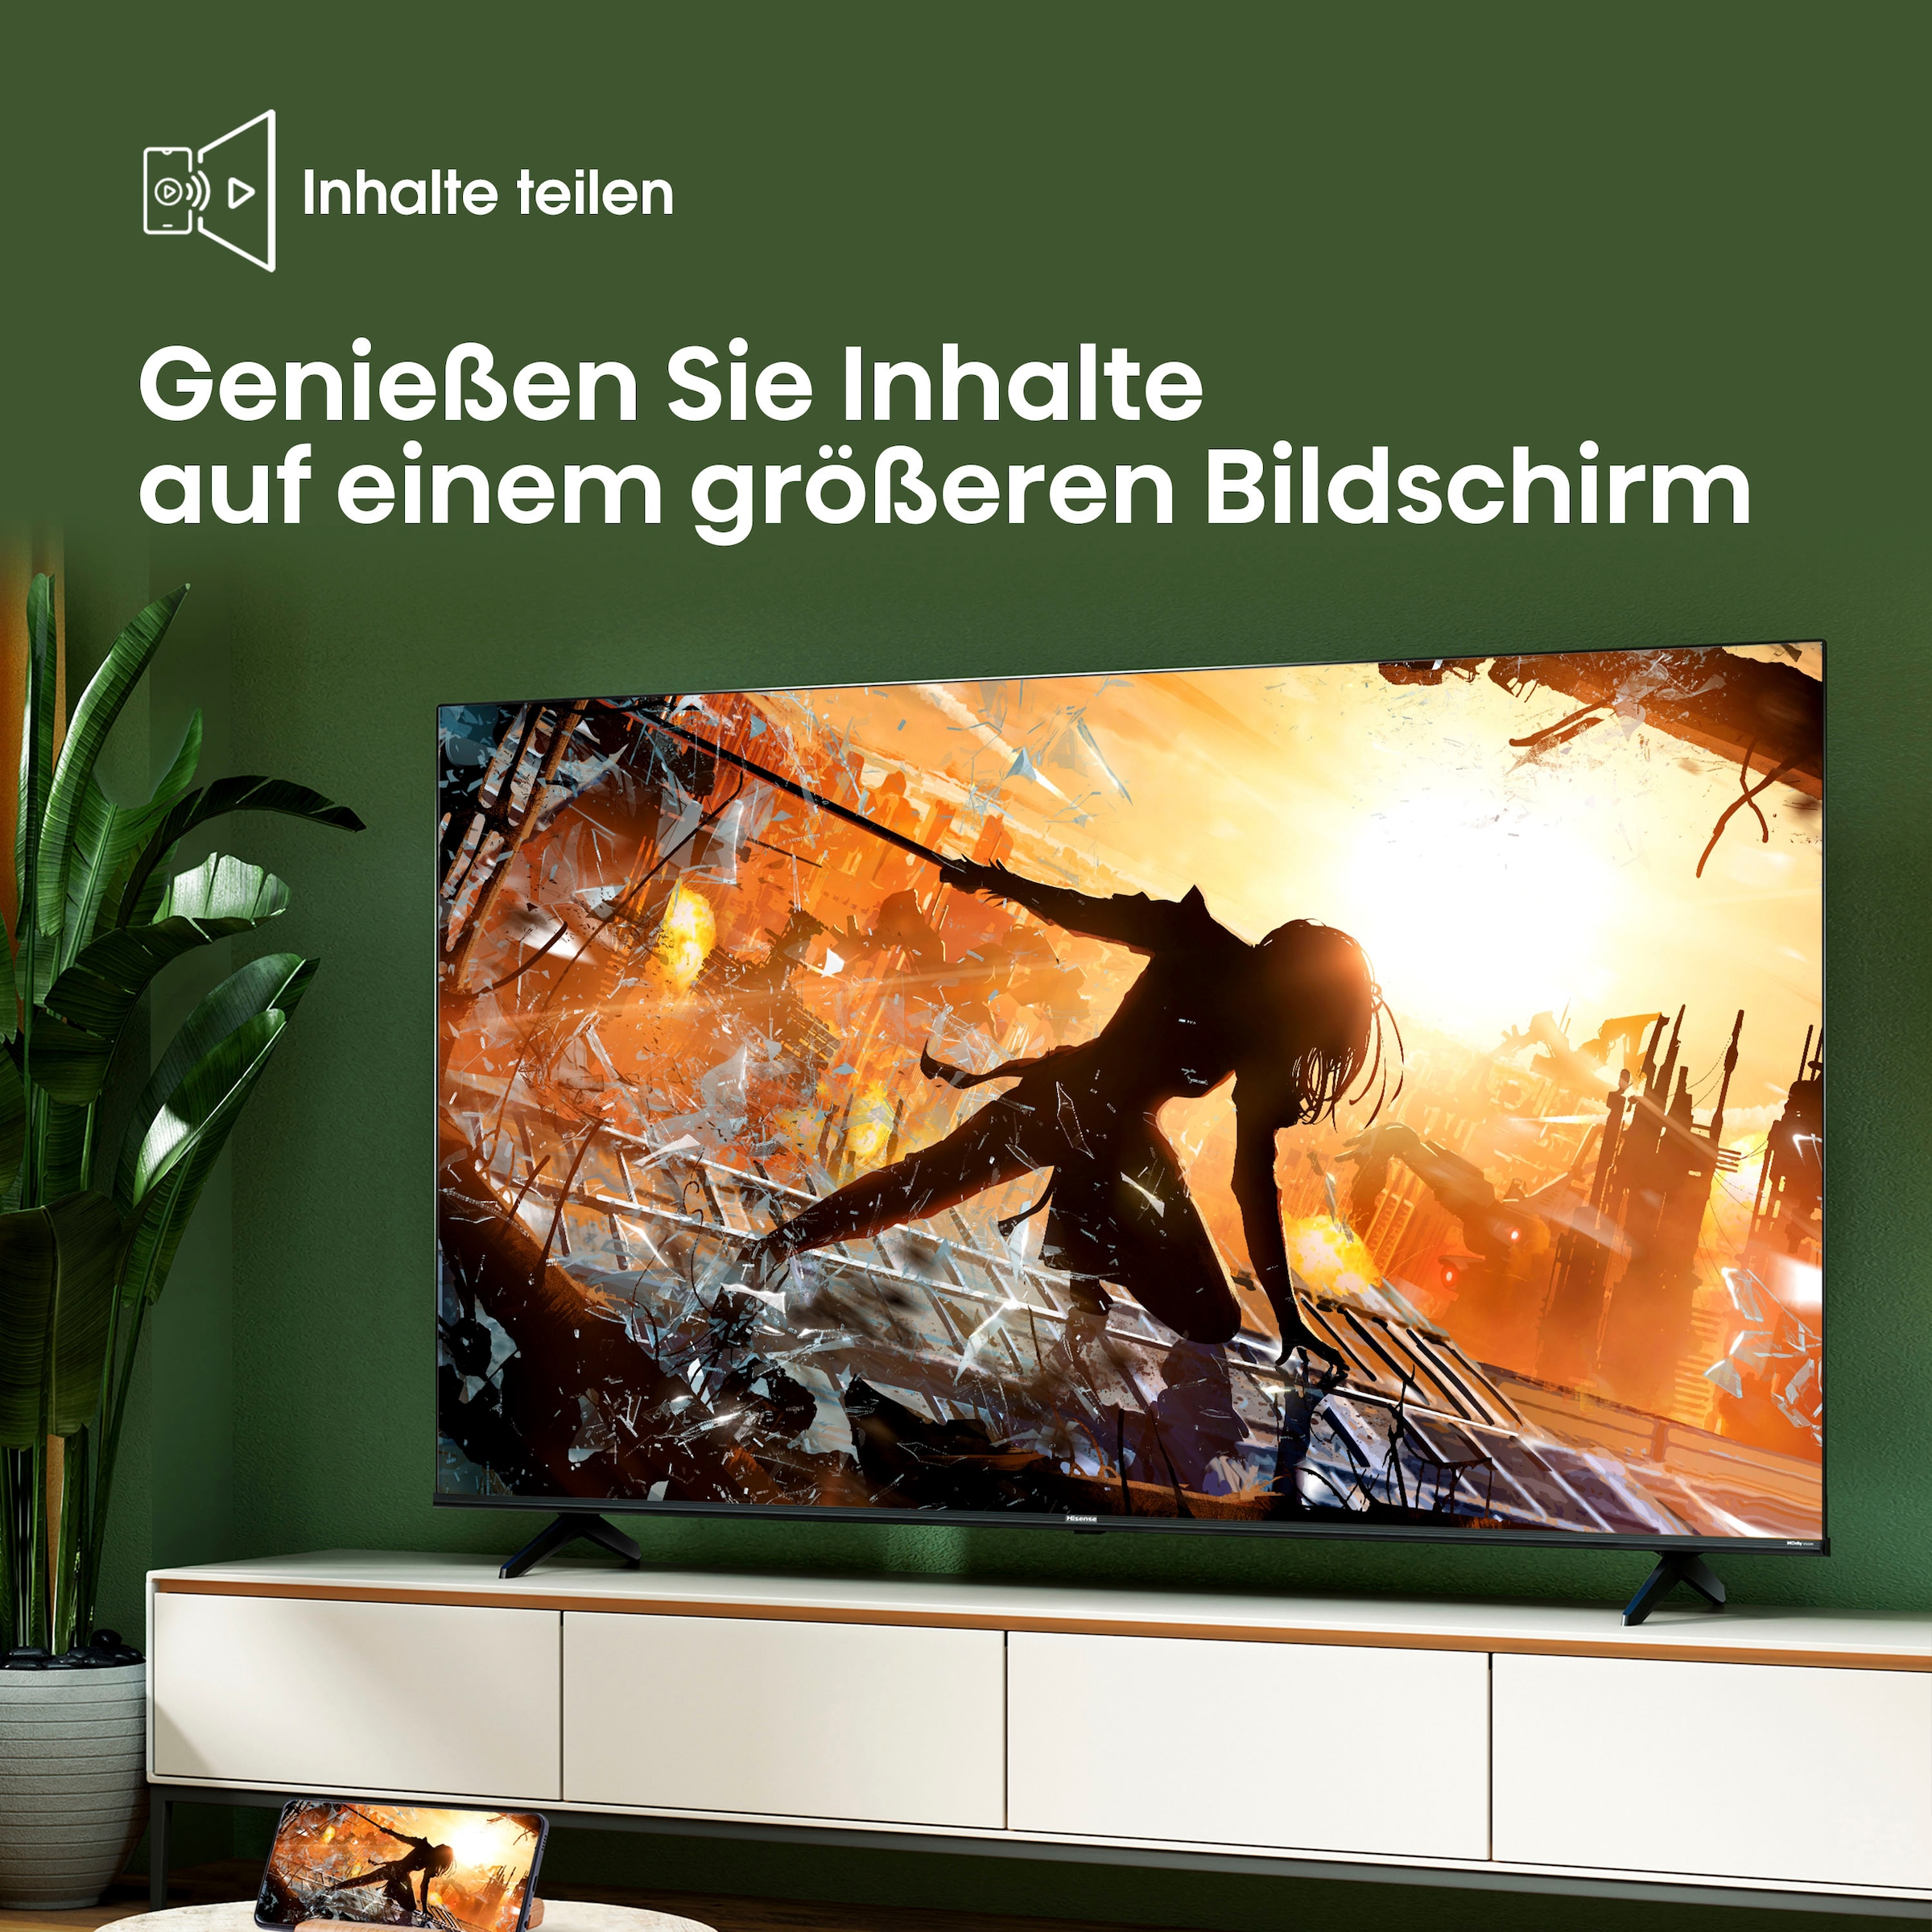 Hisense LED-Fernseher, 190 cm/75 Zoll, 4K Ultra HD, Smart-TV, Smart-TV, Dolby Vision, Triple Tuner DVB-C/S/S2/T/T2